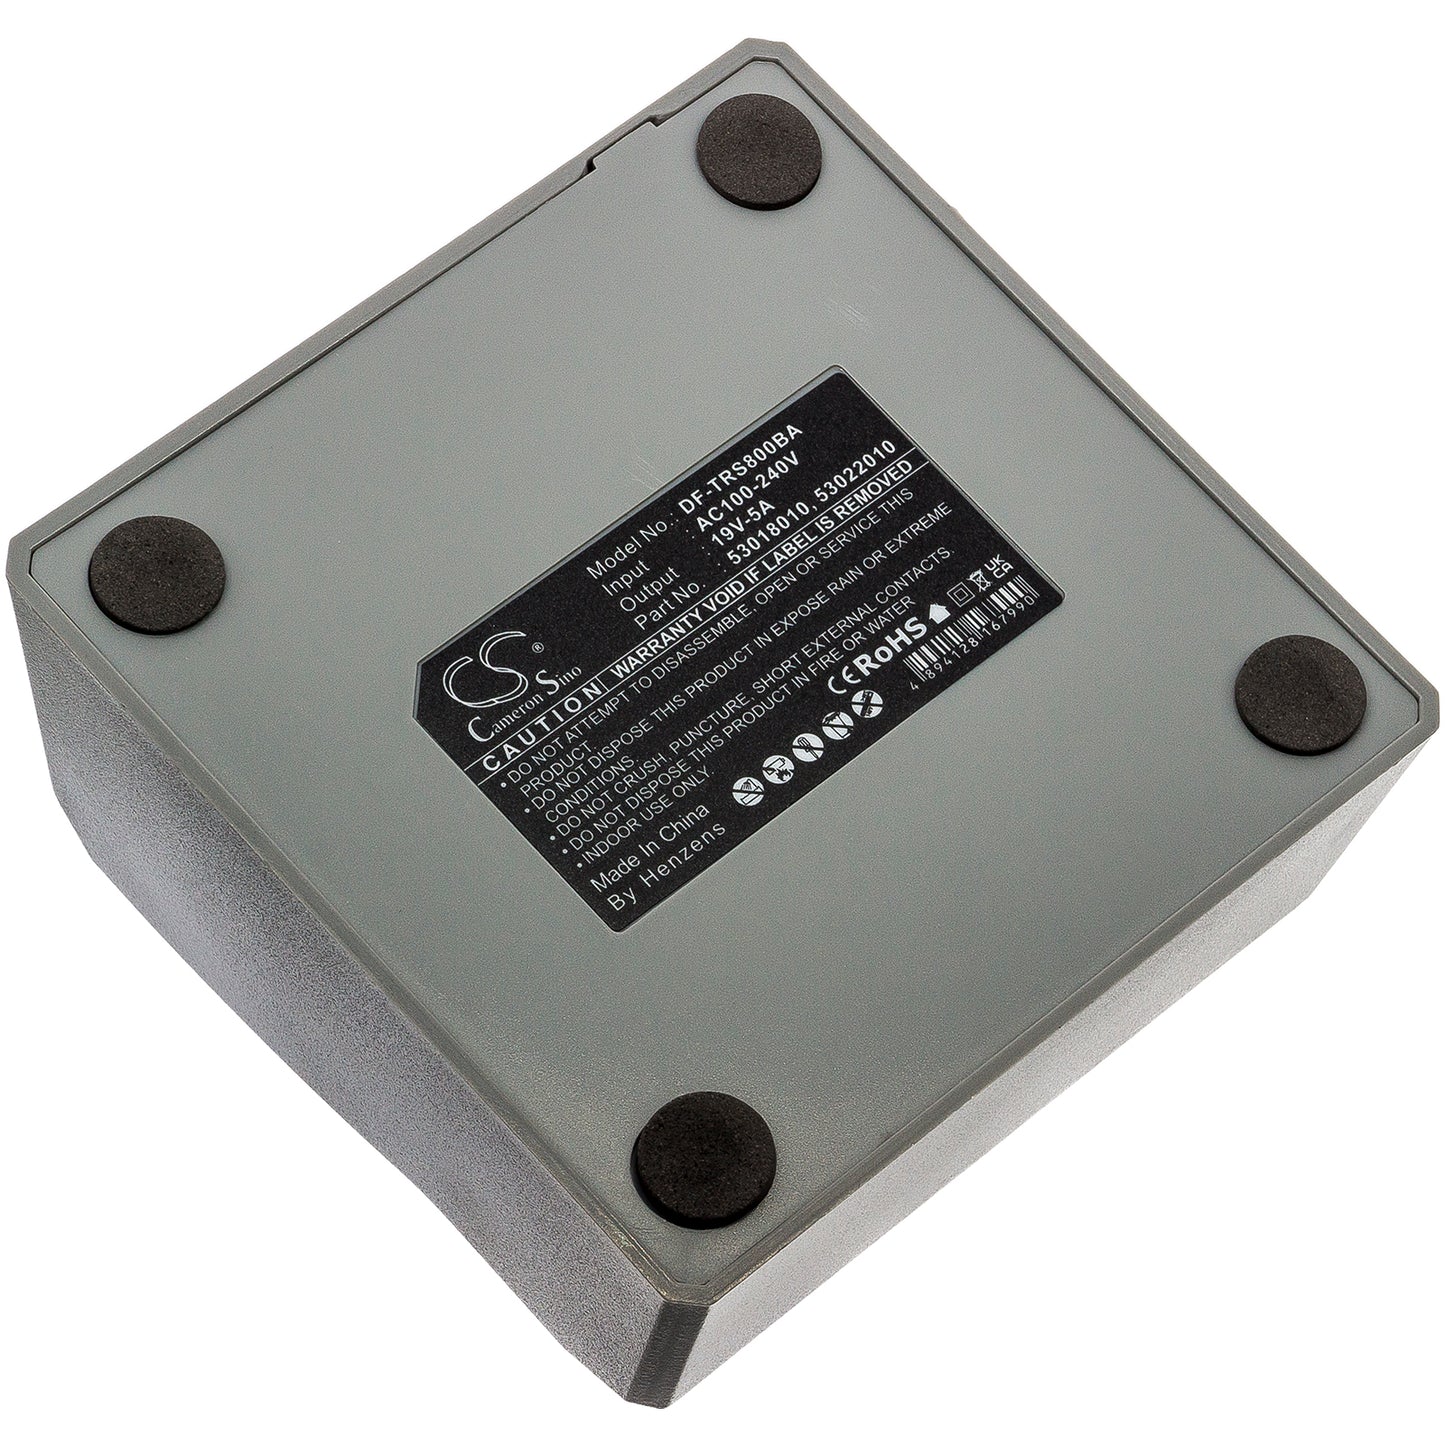 Battery Charger 53018010, 53022010 for Trimble 5700, R10, R12, R4, R6, R7, R8, S3, S5, S6, S7, S8, S9-SMAVtronics